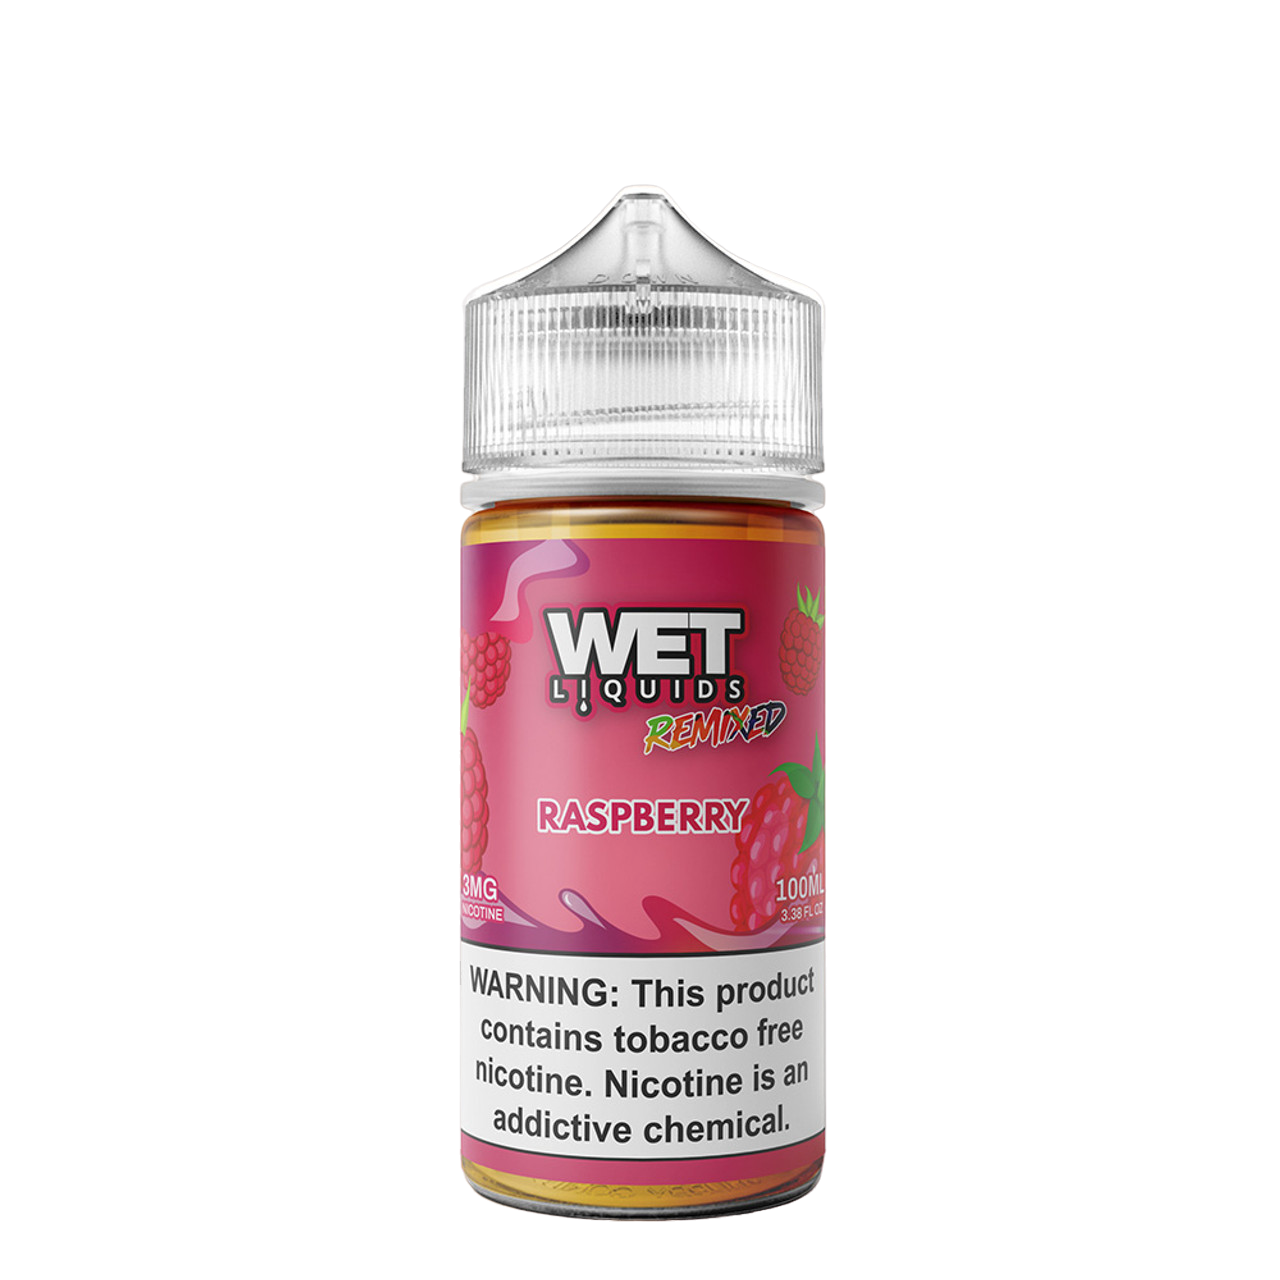 Wet Liquids Remixed Synthetic Nicotine E-Liquid 100ML Raspberry